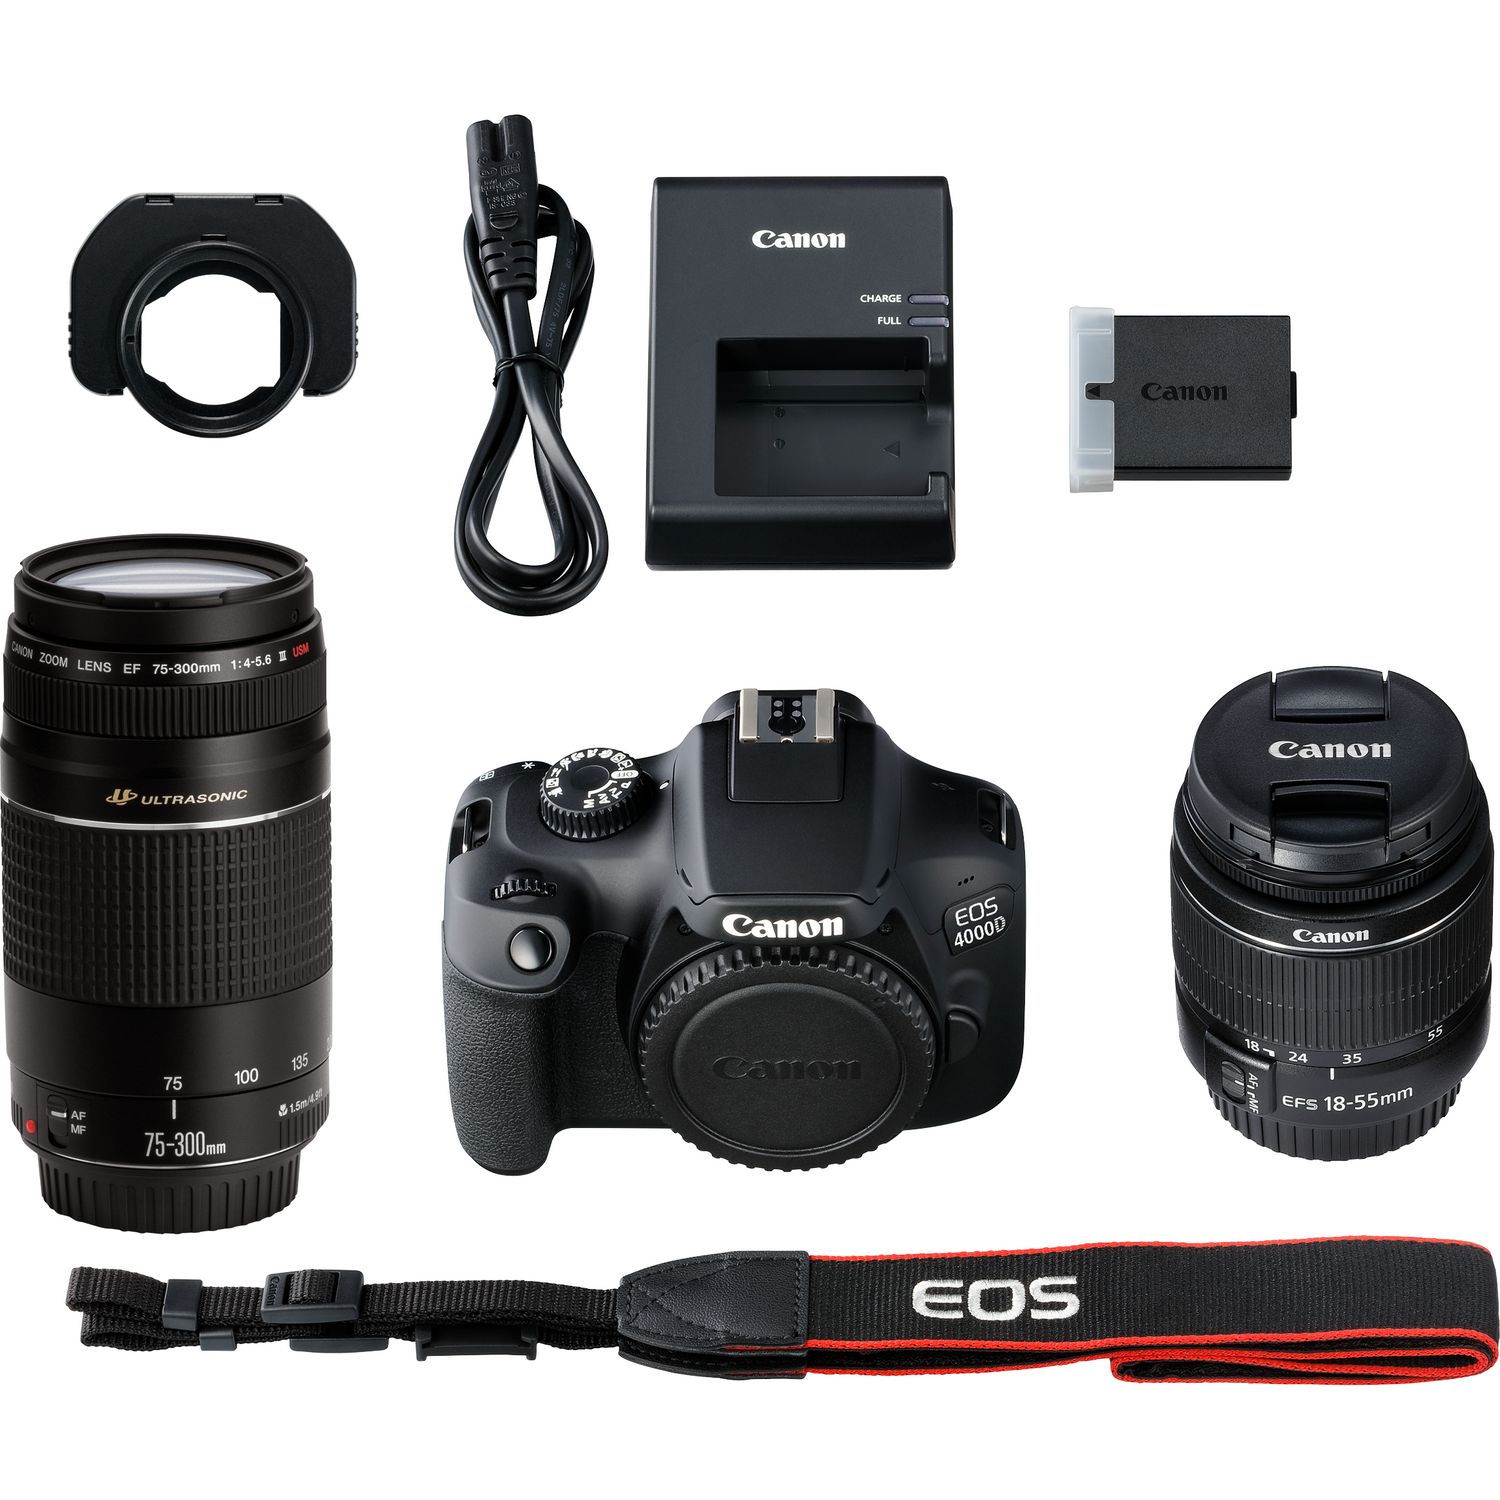 Buy Canon Eos 4000d Body Ef S 18 55mm Iii Ef S 75 300mm Iii In Wi Fi Cameras Canon Uae Store